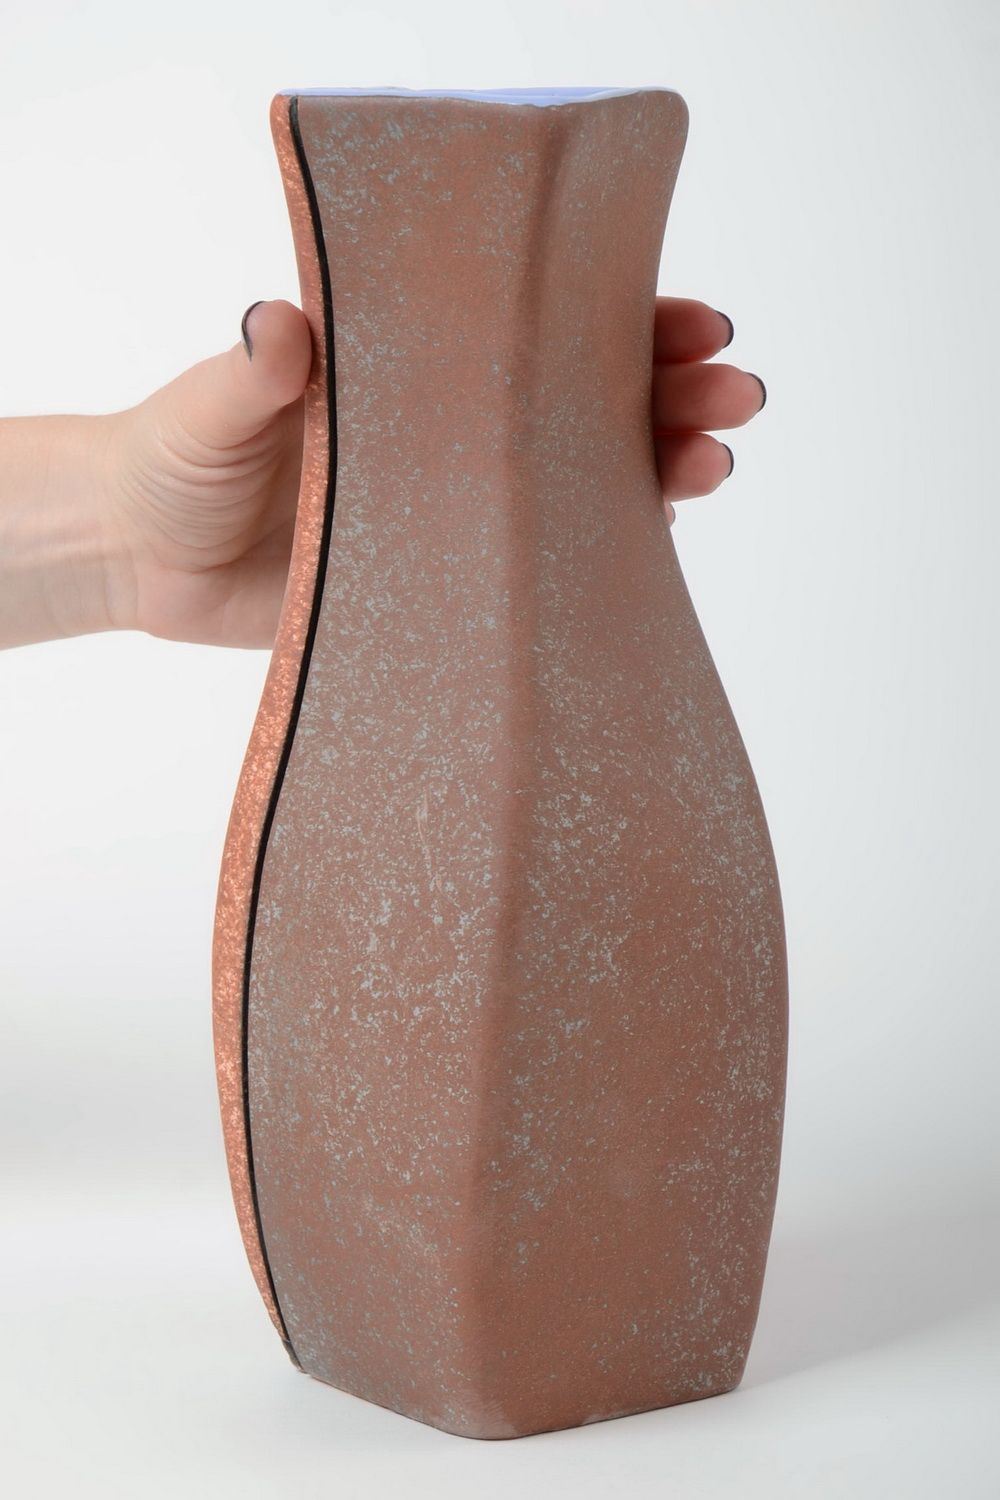 Dekorative Vase aus Ton für Tischdeko mit Bemalung 2.2L Künstler Handarbeit foto 5